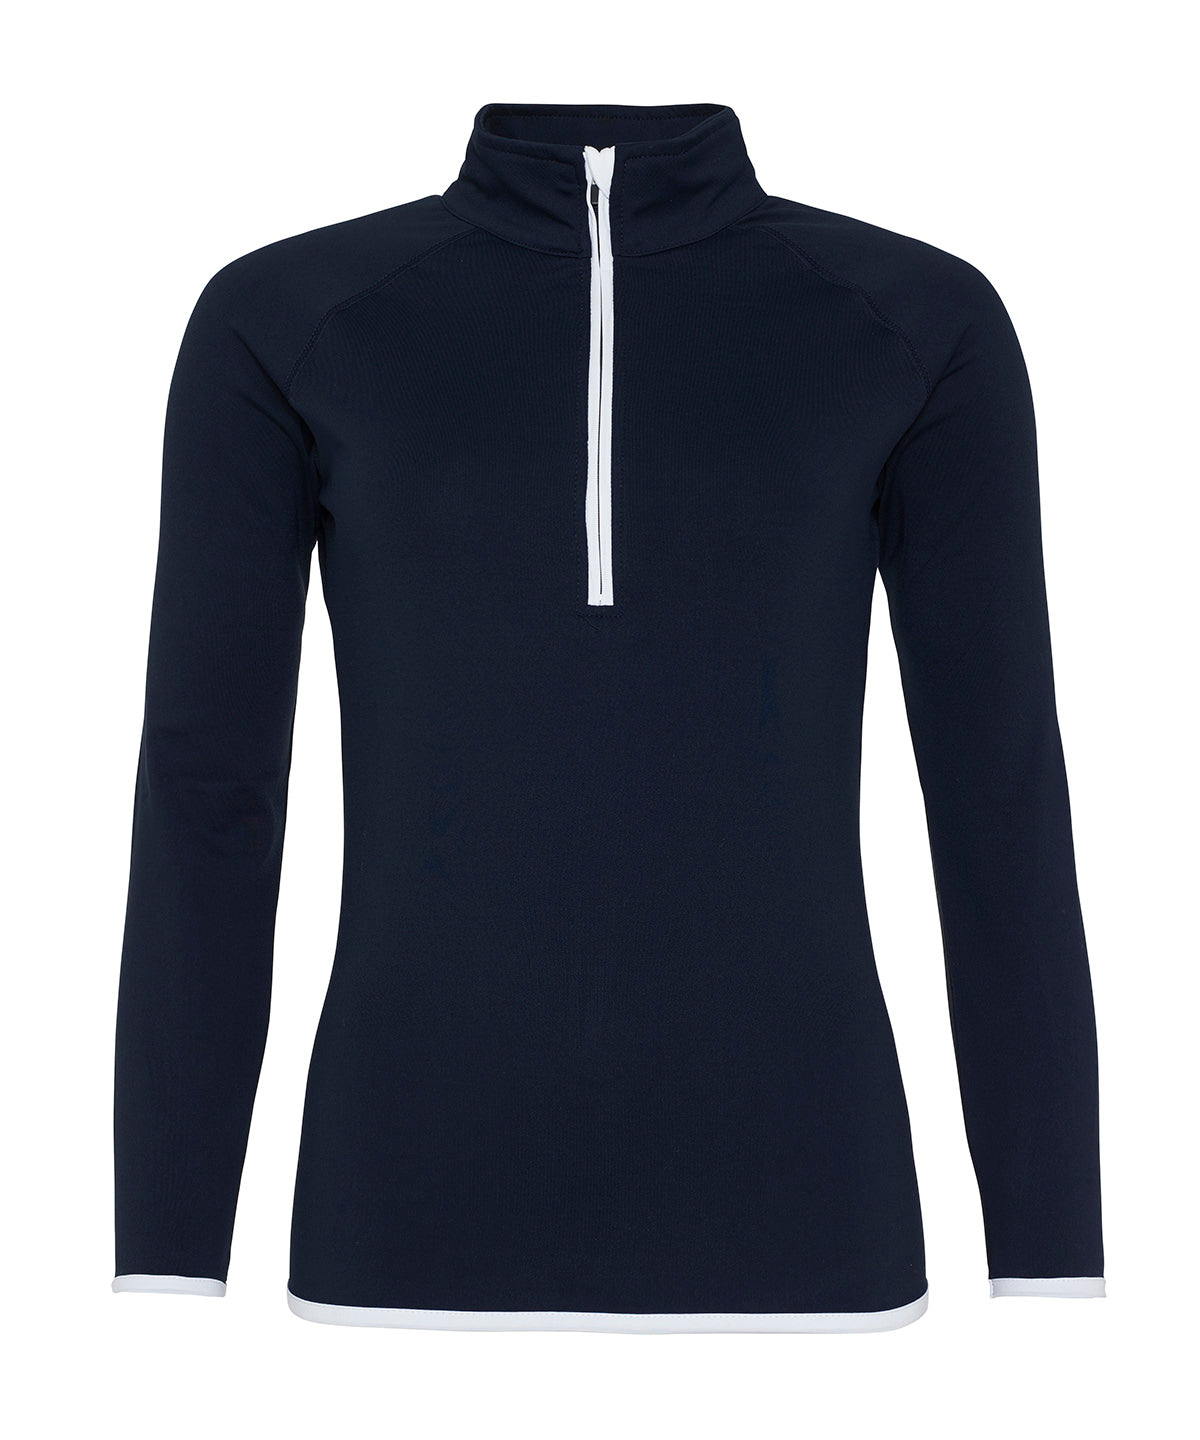 Women's cool ½ zip sweatshirt | French Navy/Arctic White